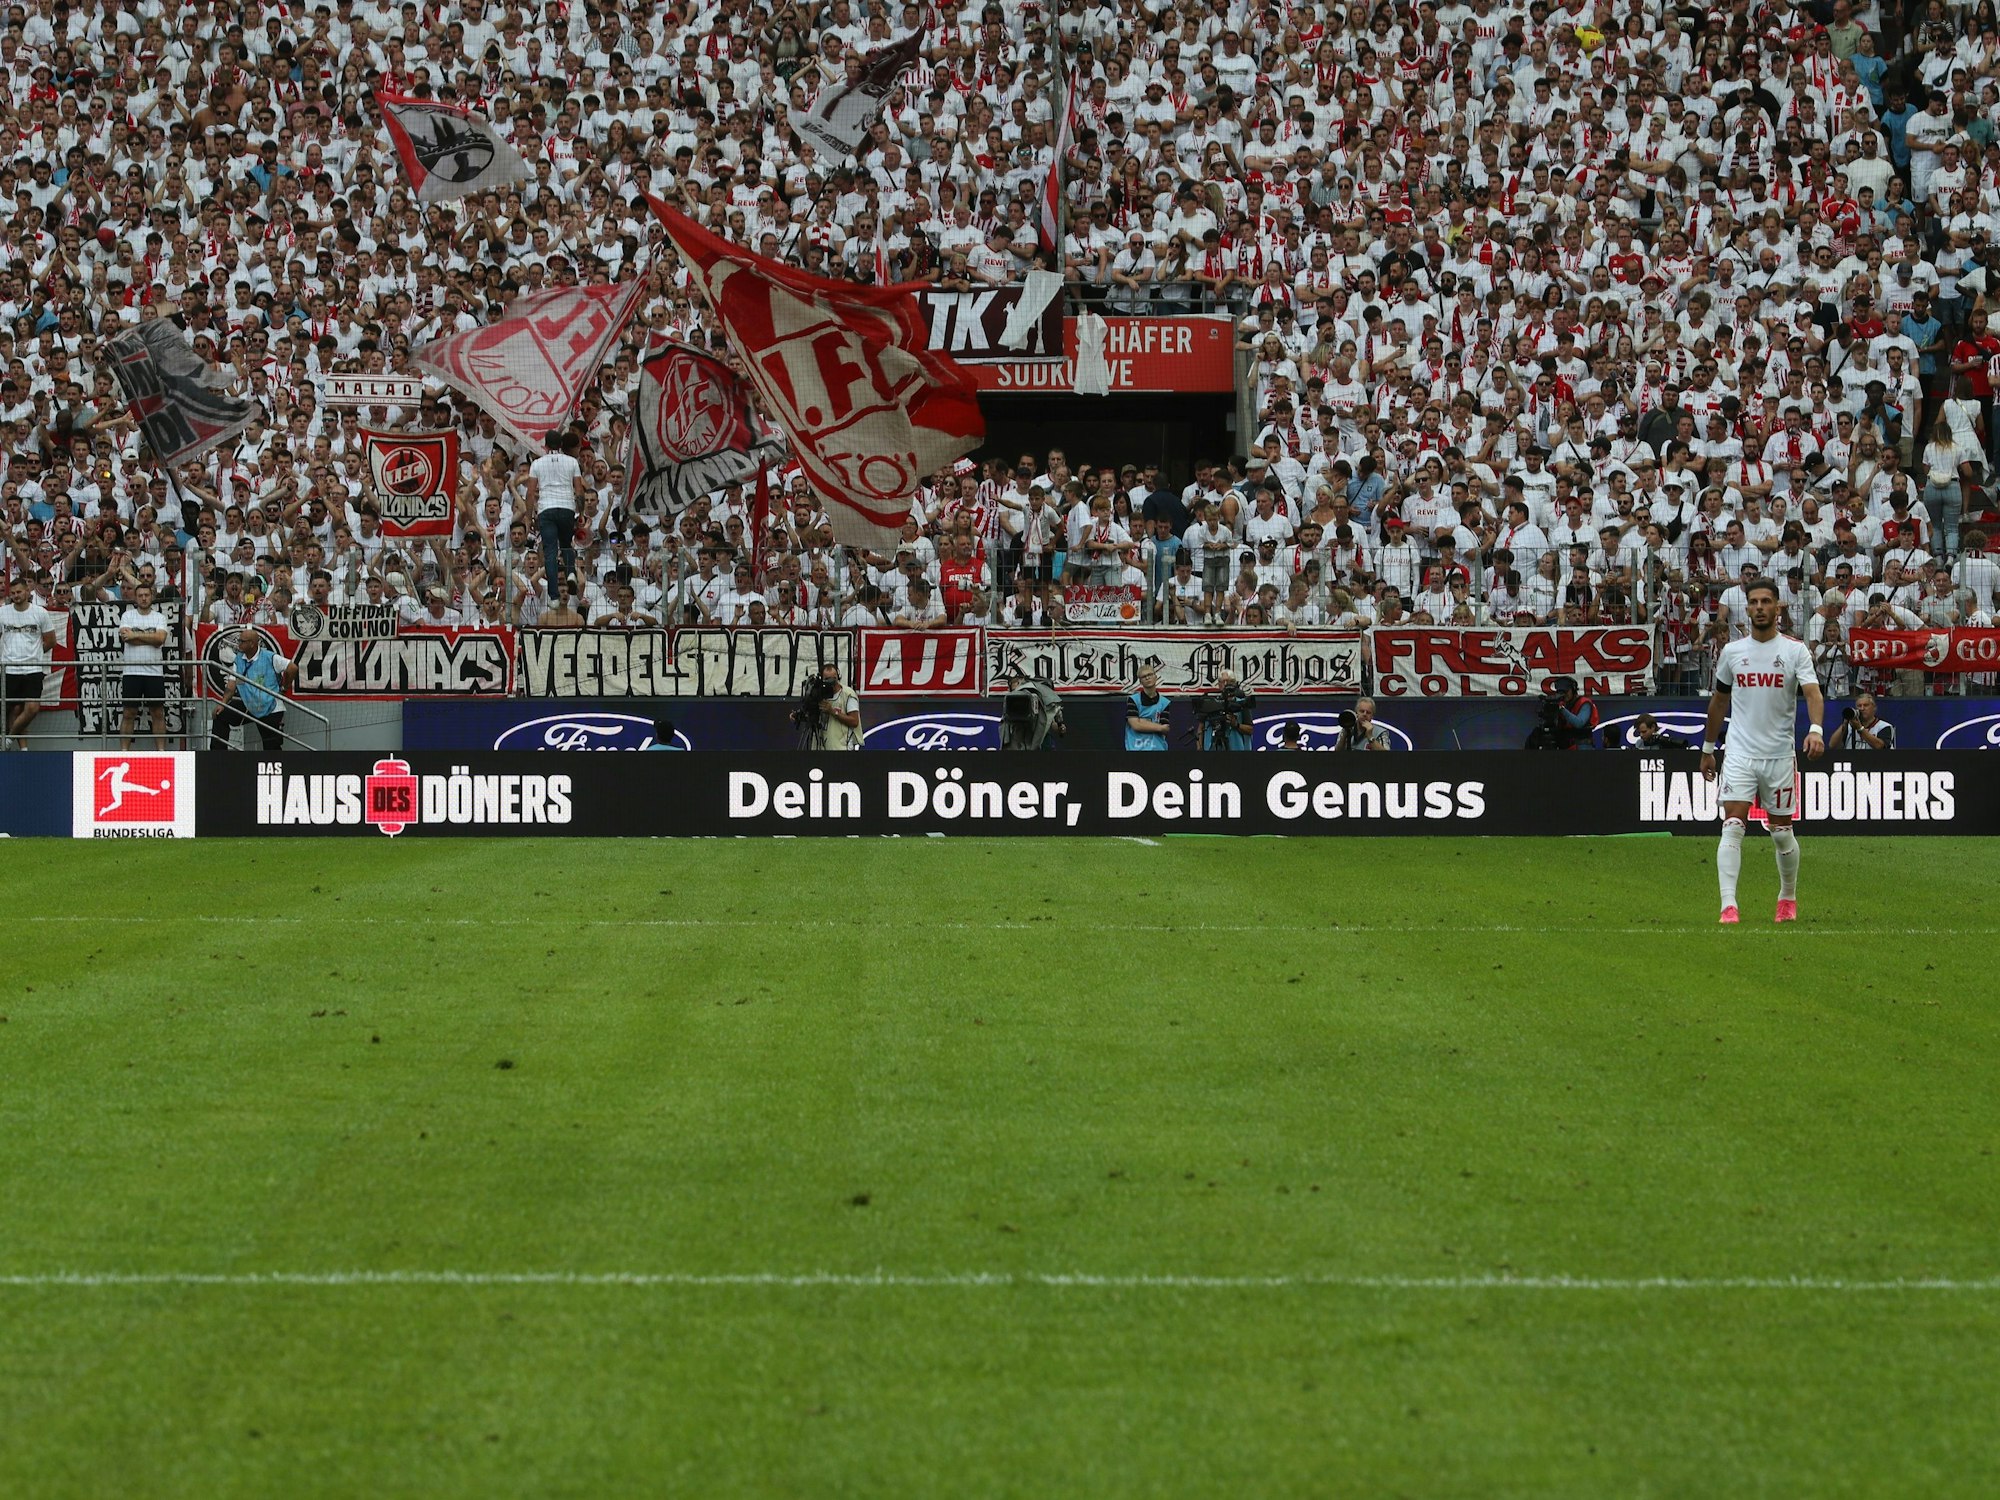 Der Werbeslogan von Haus des Döners im Rhein-Energie-Stadion.